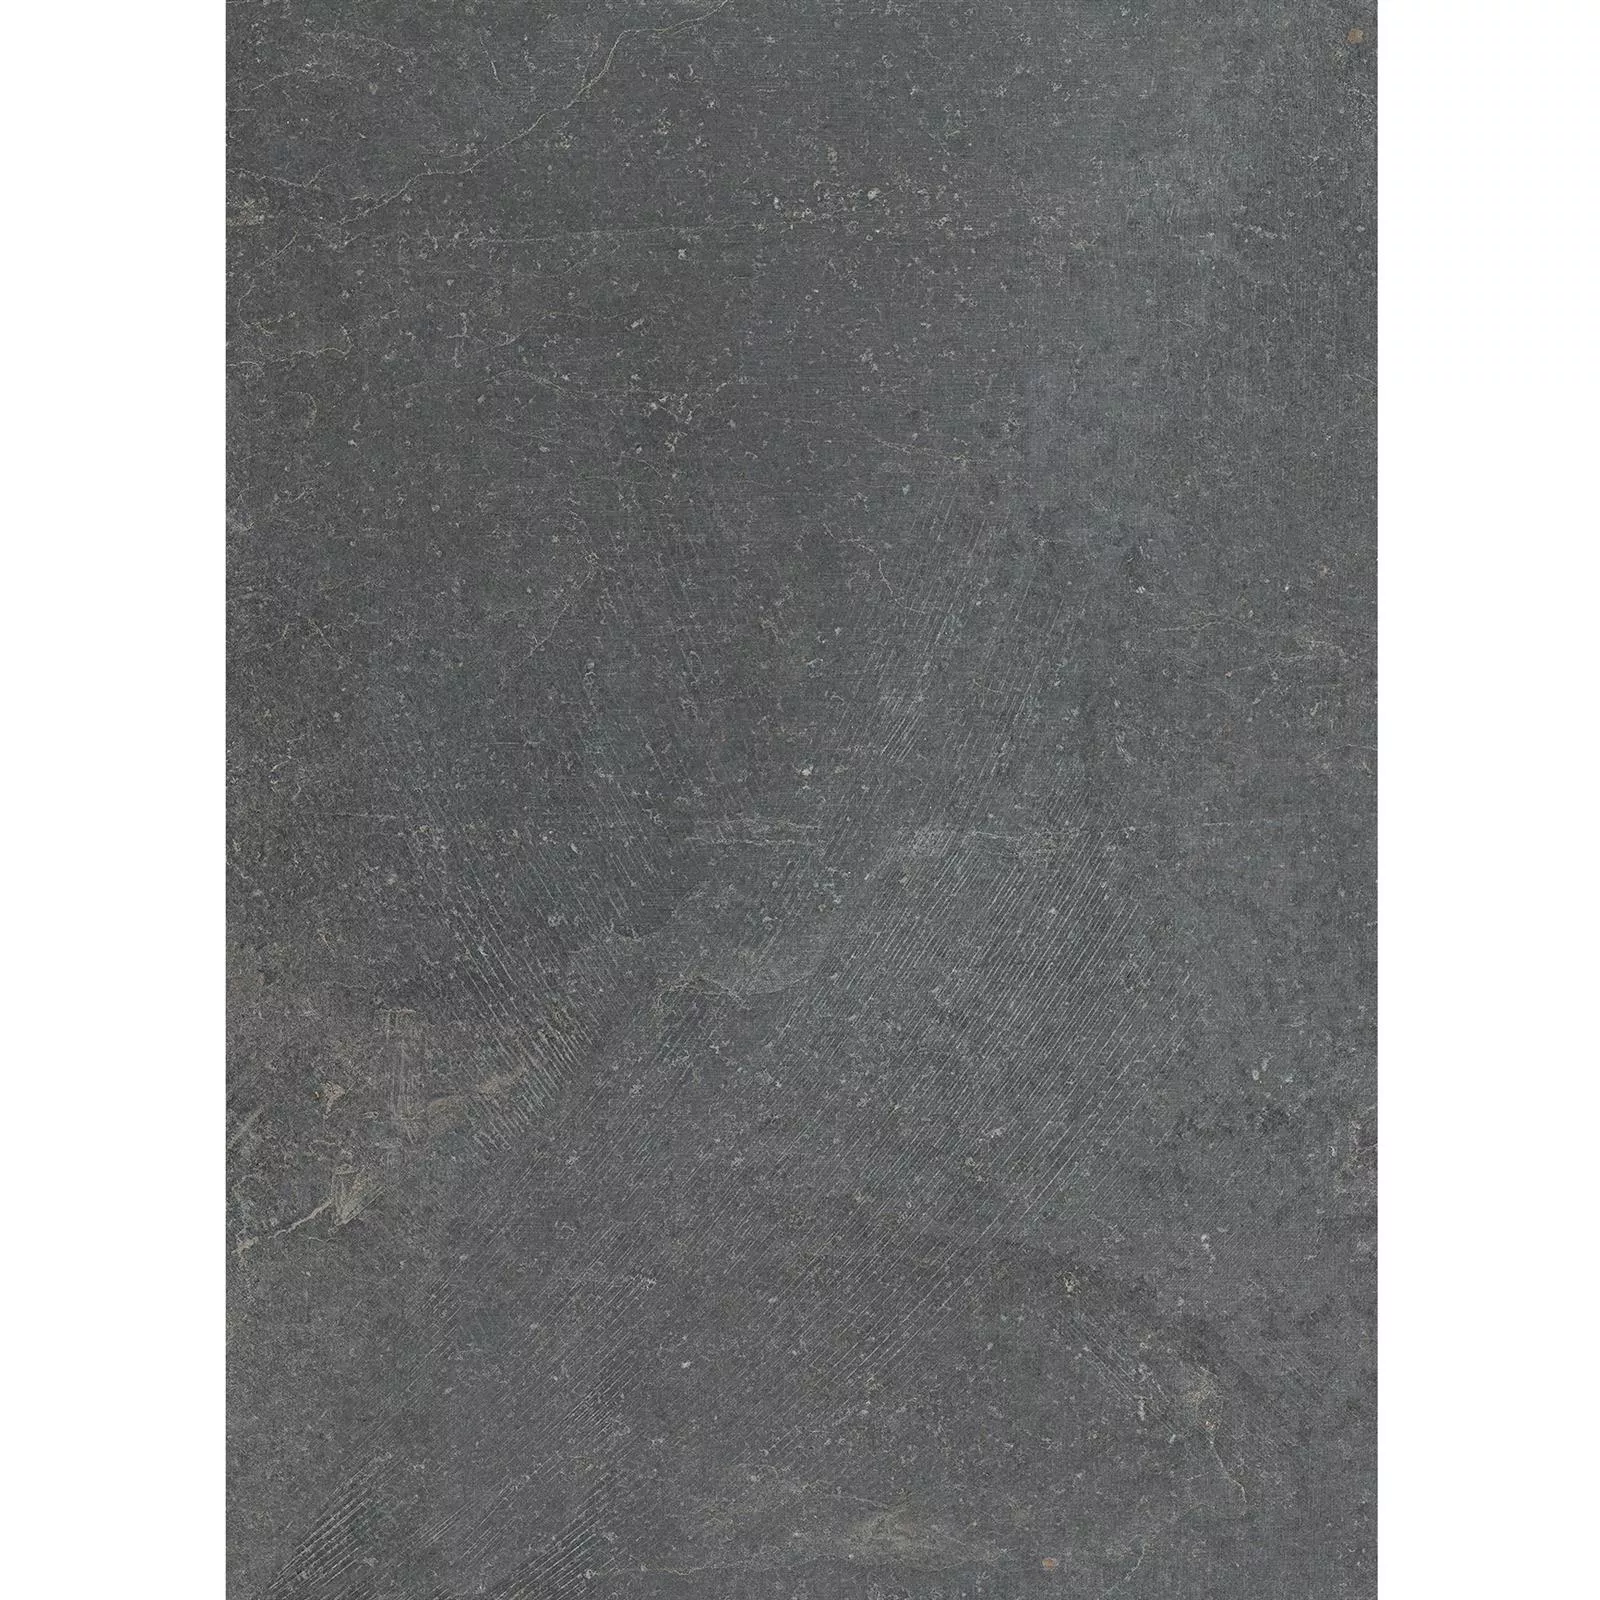 Vzorek Podlahové Dlaždice Kámen Vzhled Horizon Antracitová 60x120cm